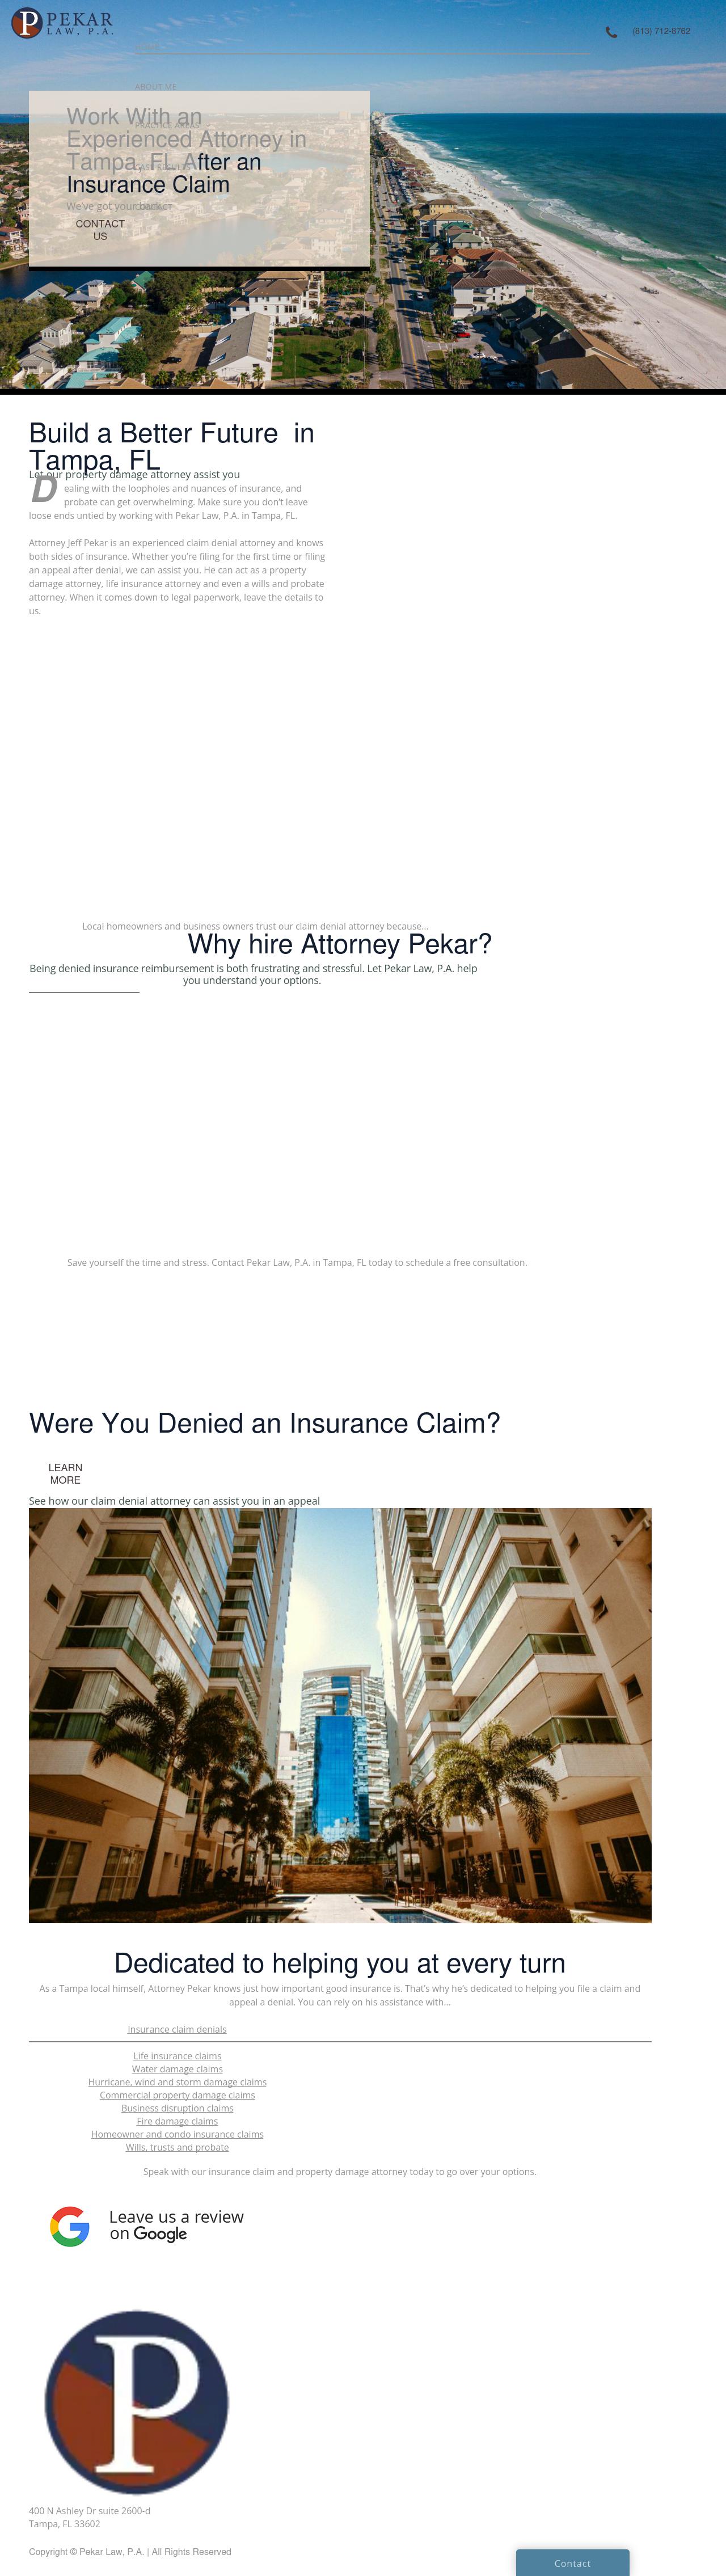 Pekar Law P.A. - Tampa FL Lawyers